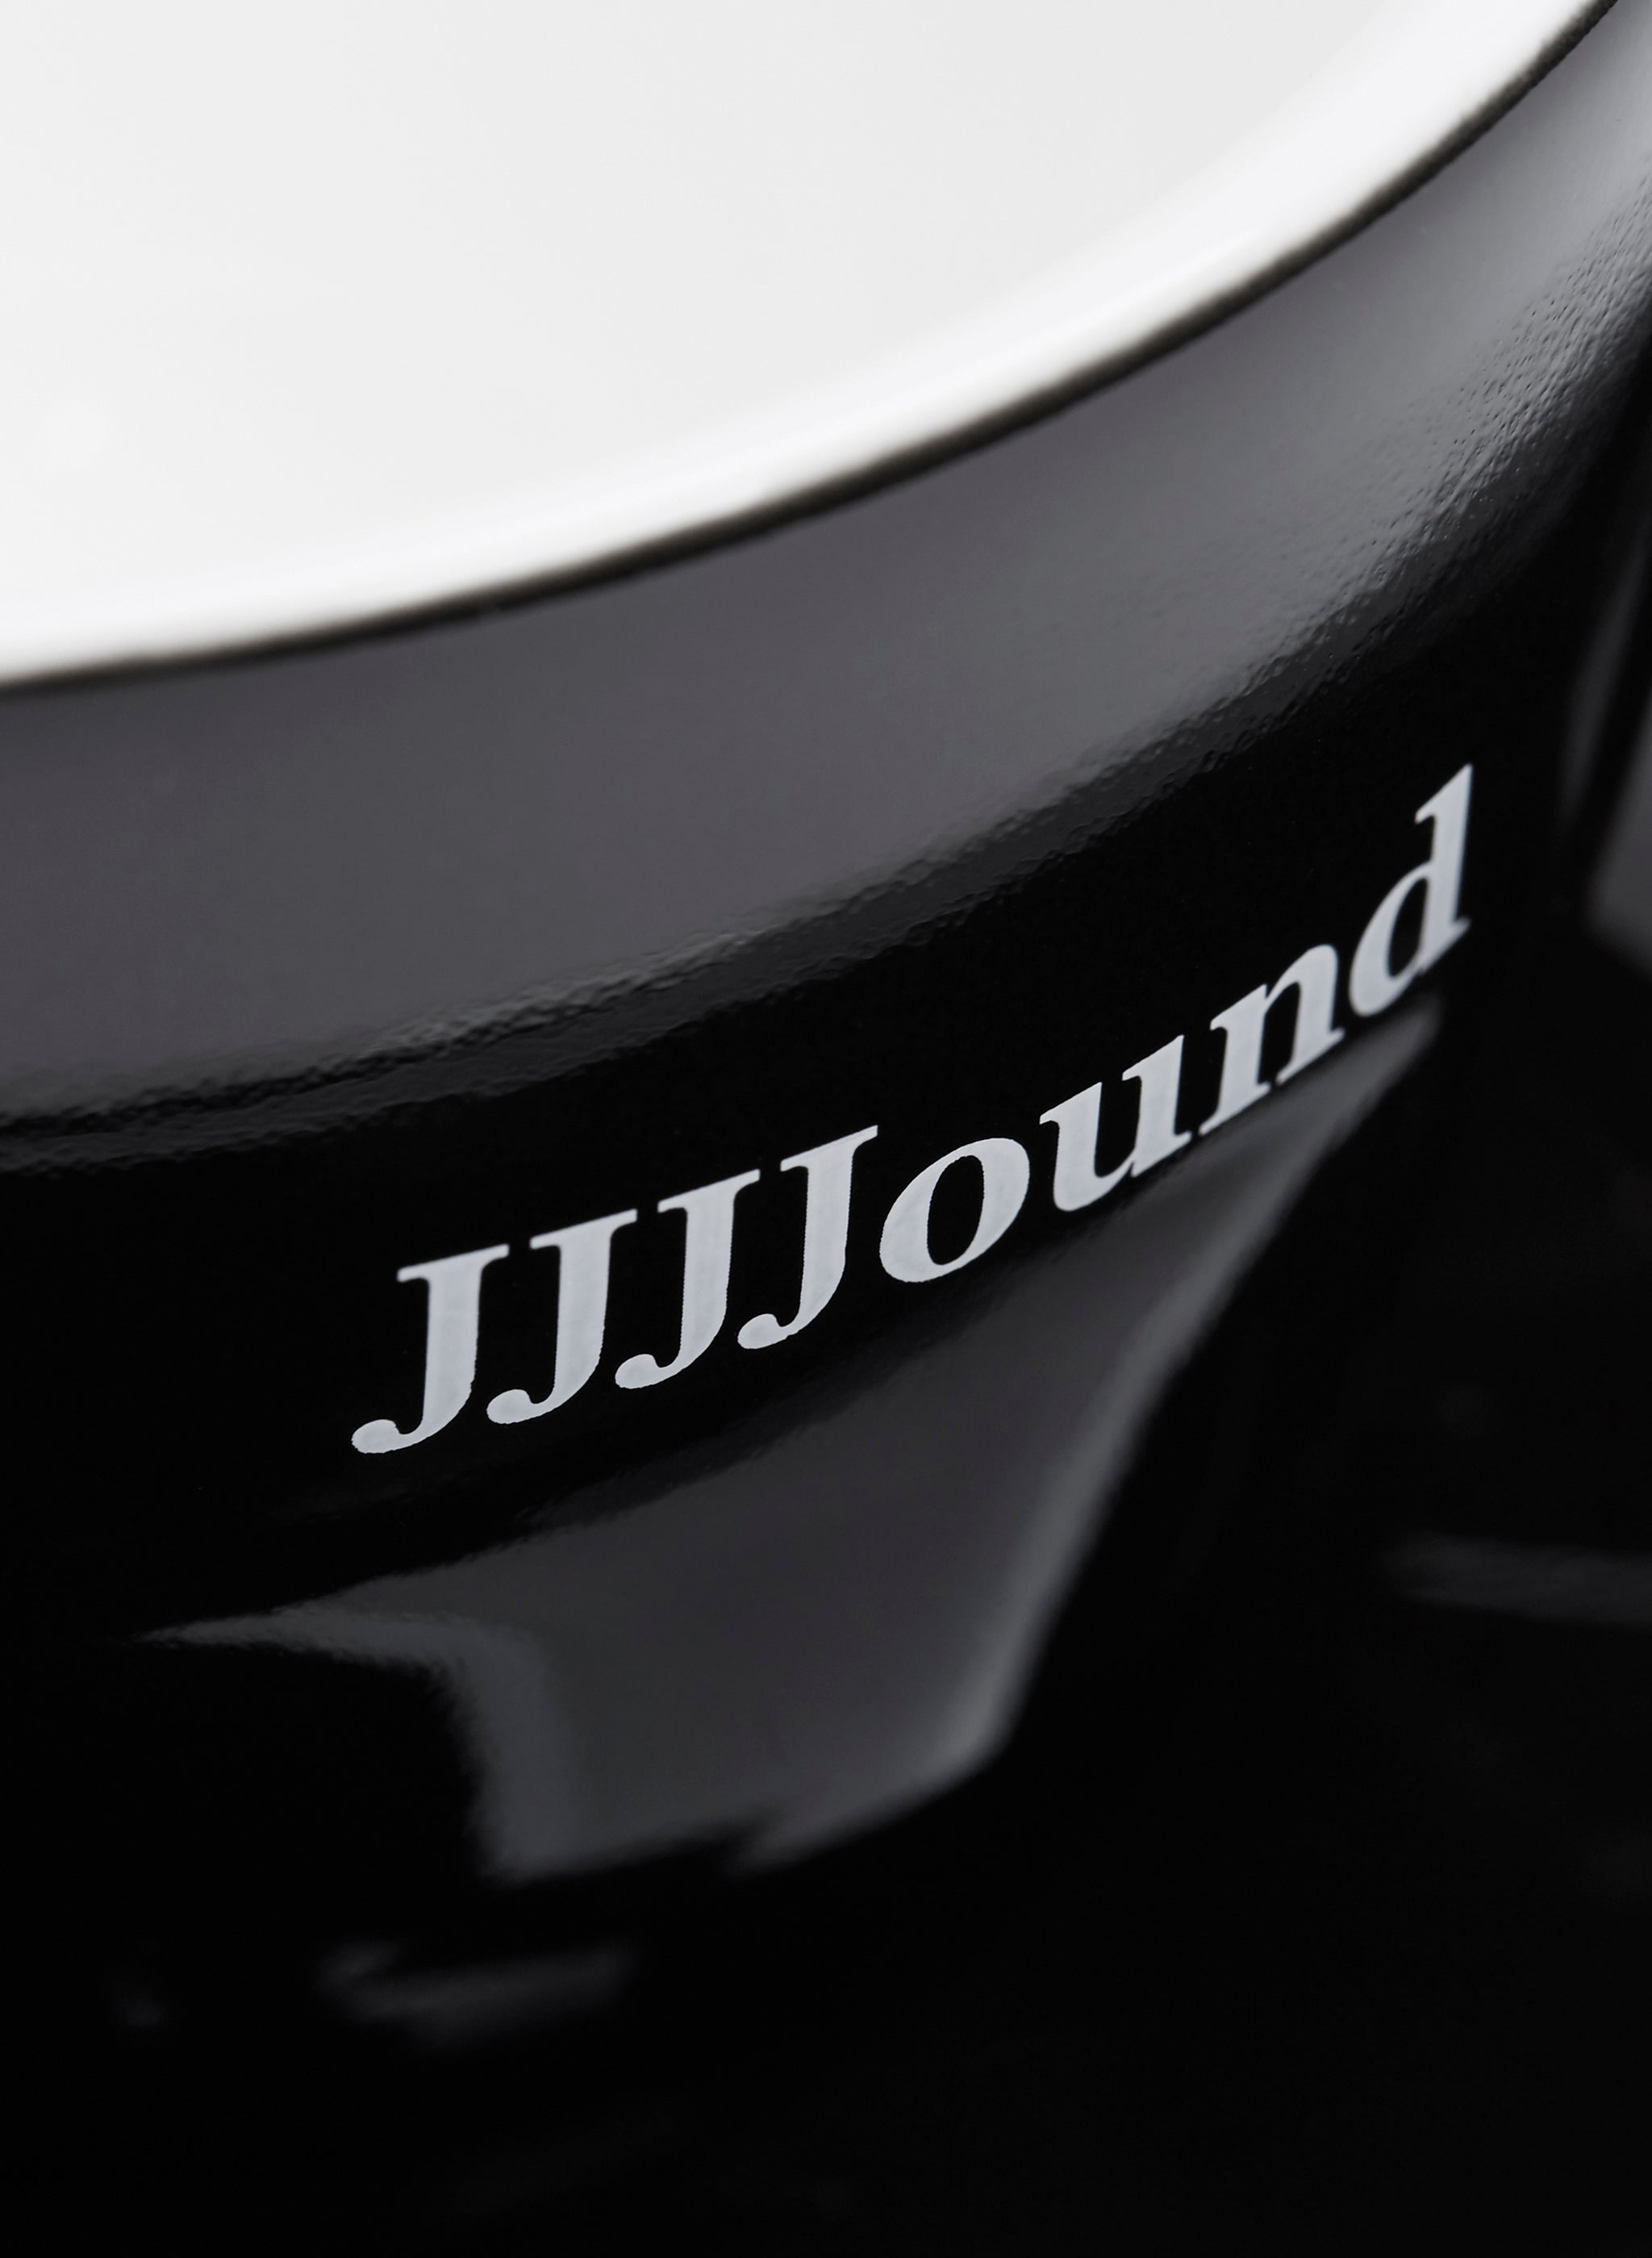 Black Acme Cup With Logo – JJJJound